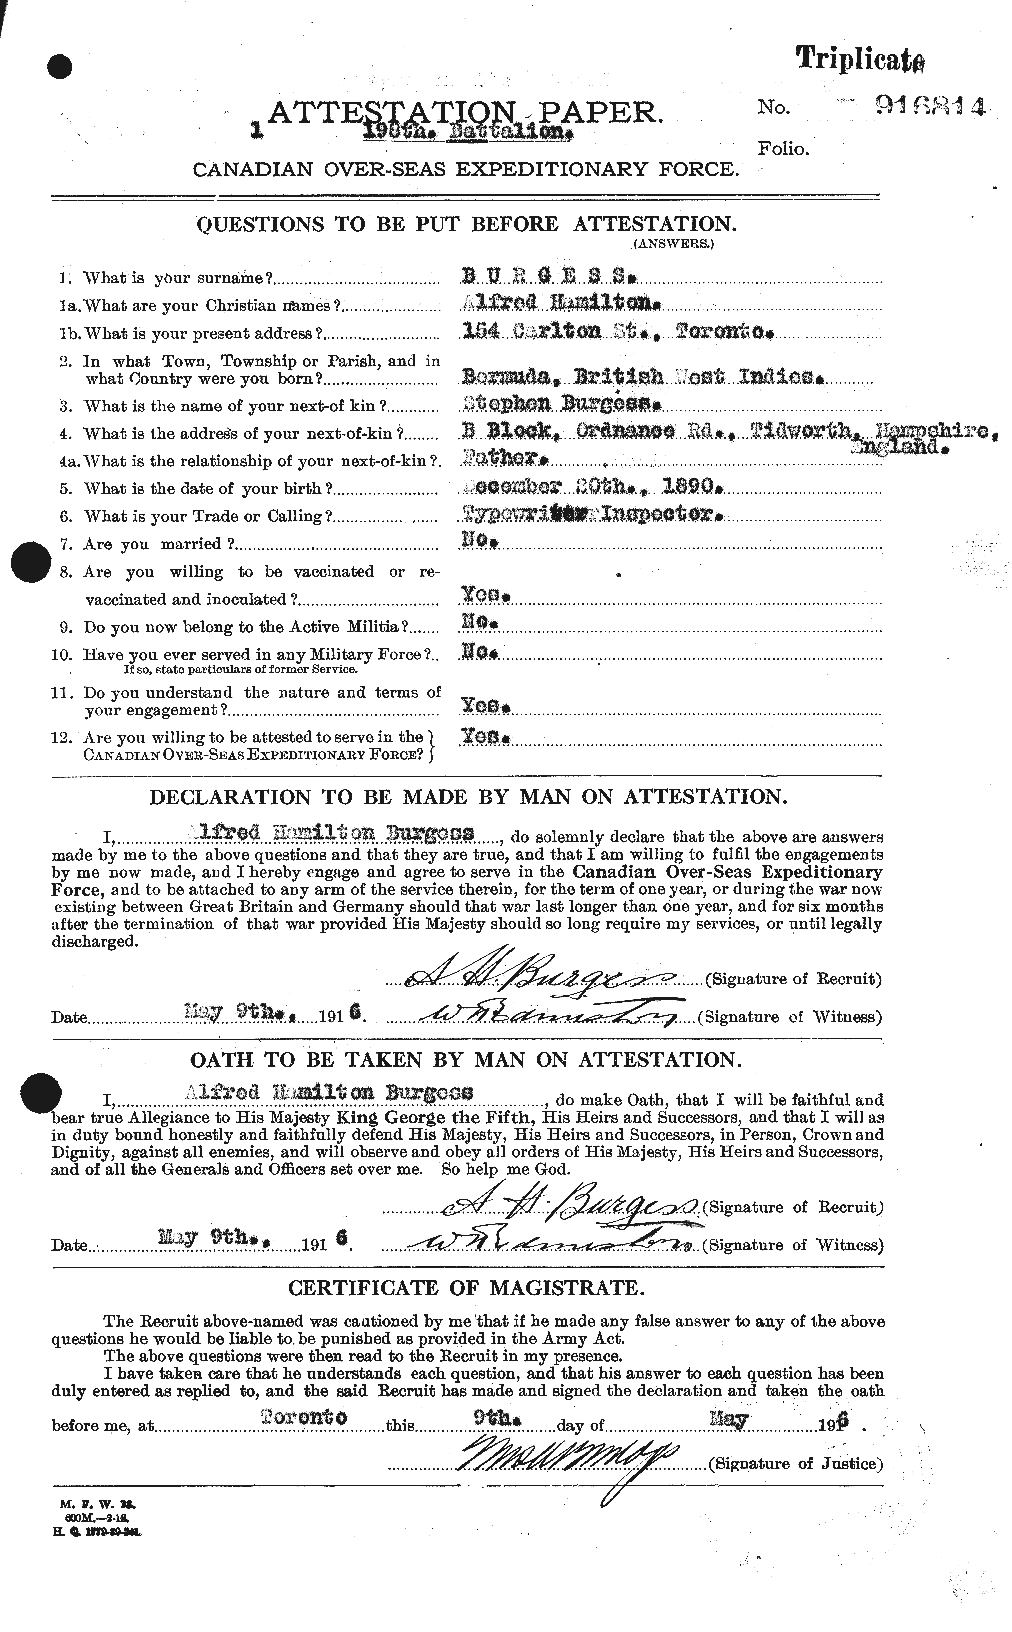 Dossiers du Personnel de la Première Guerre mondiale - CEC 275302a